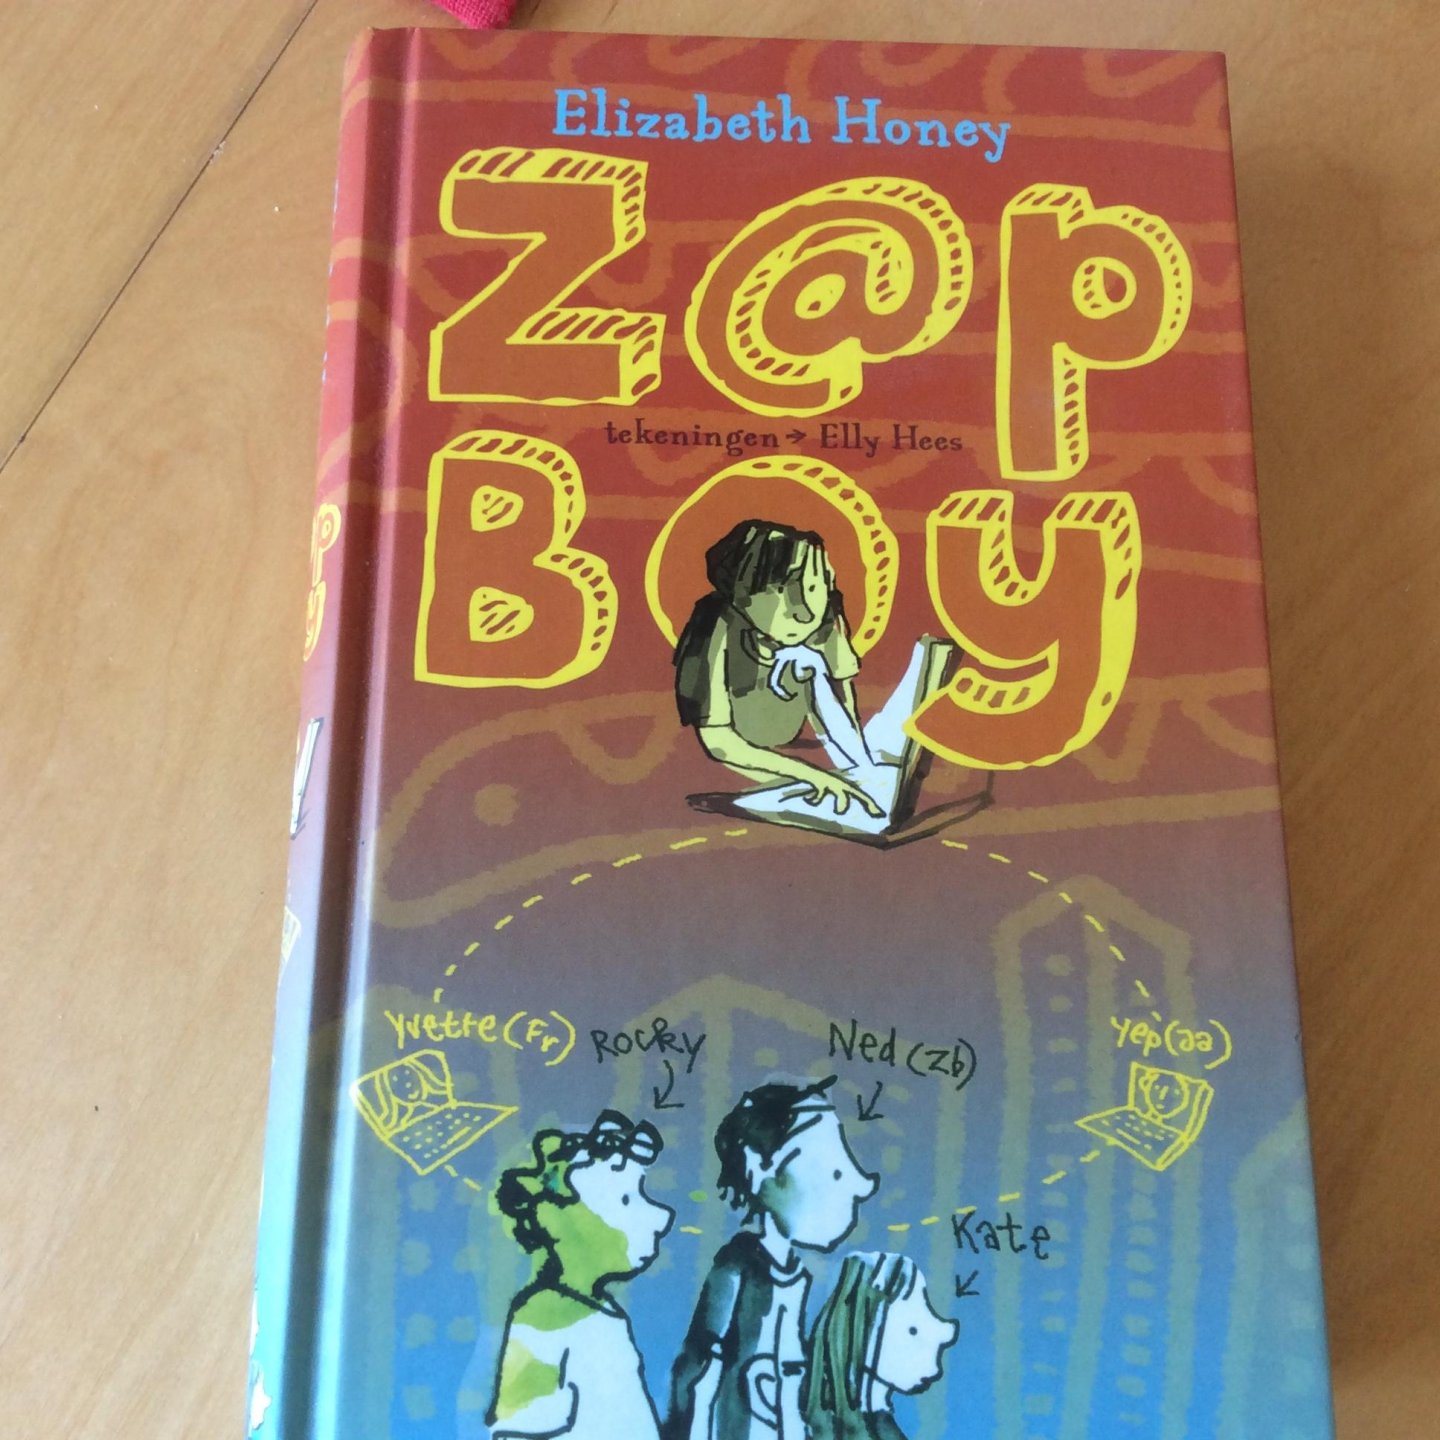 Honey, Elizabeth - Zap boy